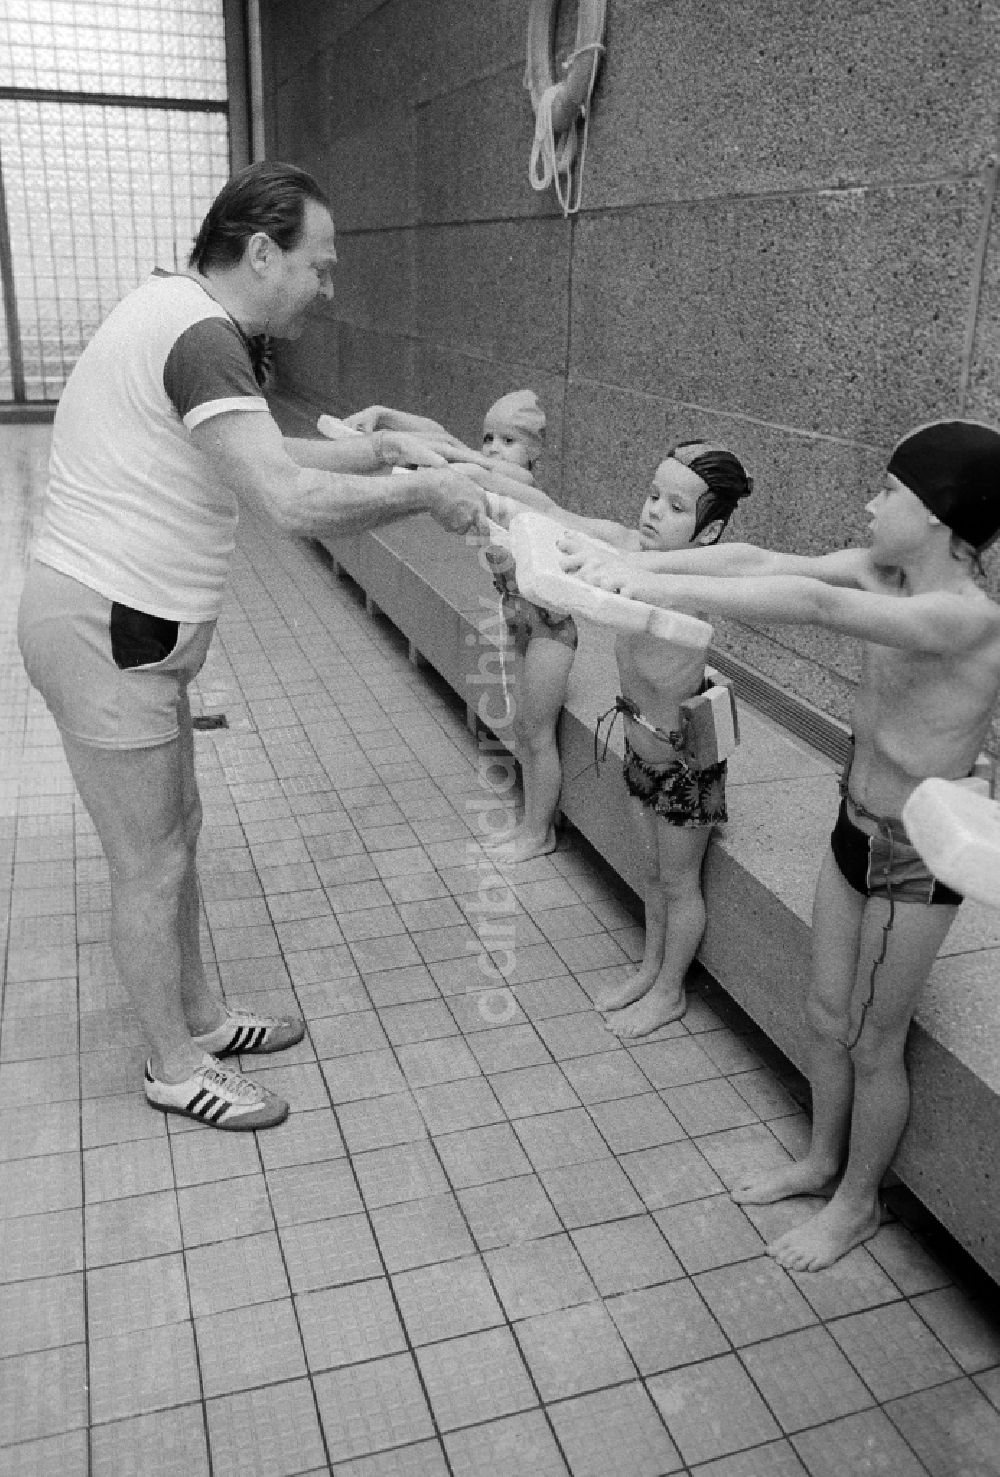 DDR-Bildarchiv: Berlin - Schwimmunterricht der Klassenstufen 2 und 3 in einer Schwimmhalle in Berlin, der ehemaligen Hauptstadt der DDR, Deutsche Demokratische Republik